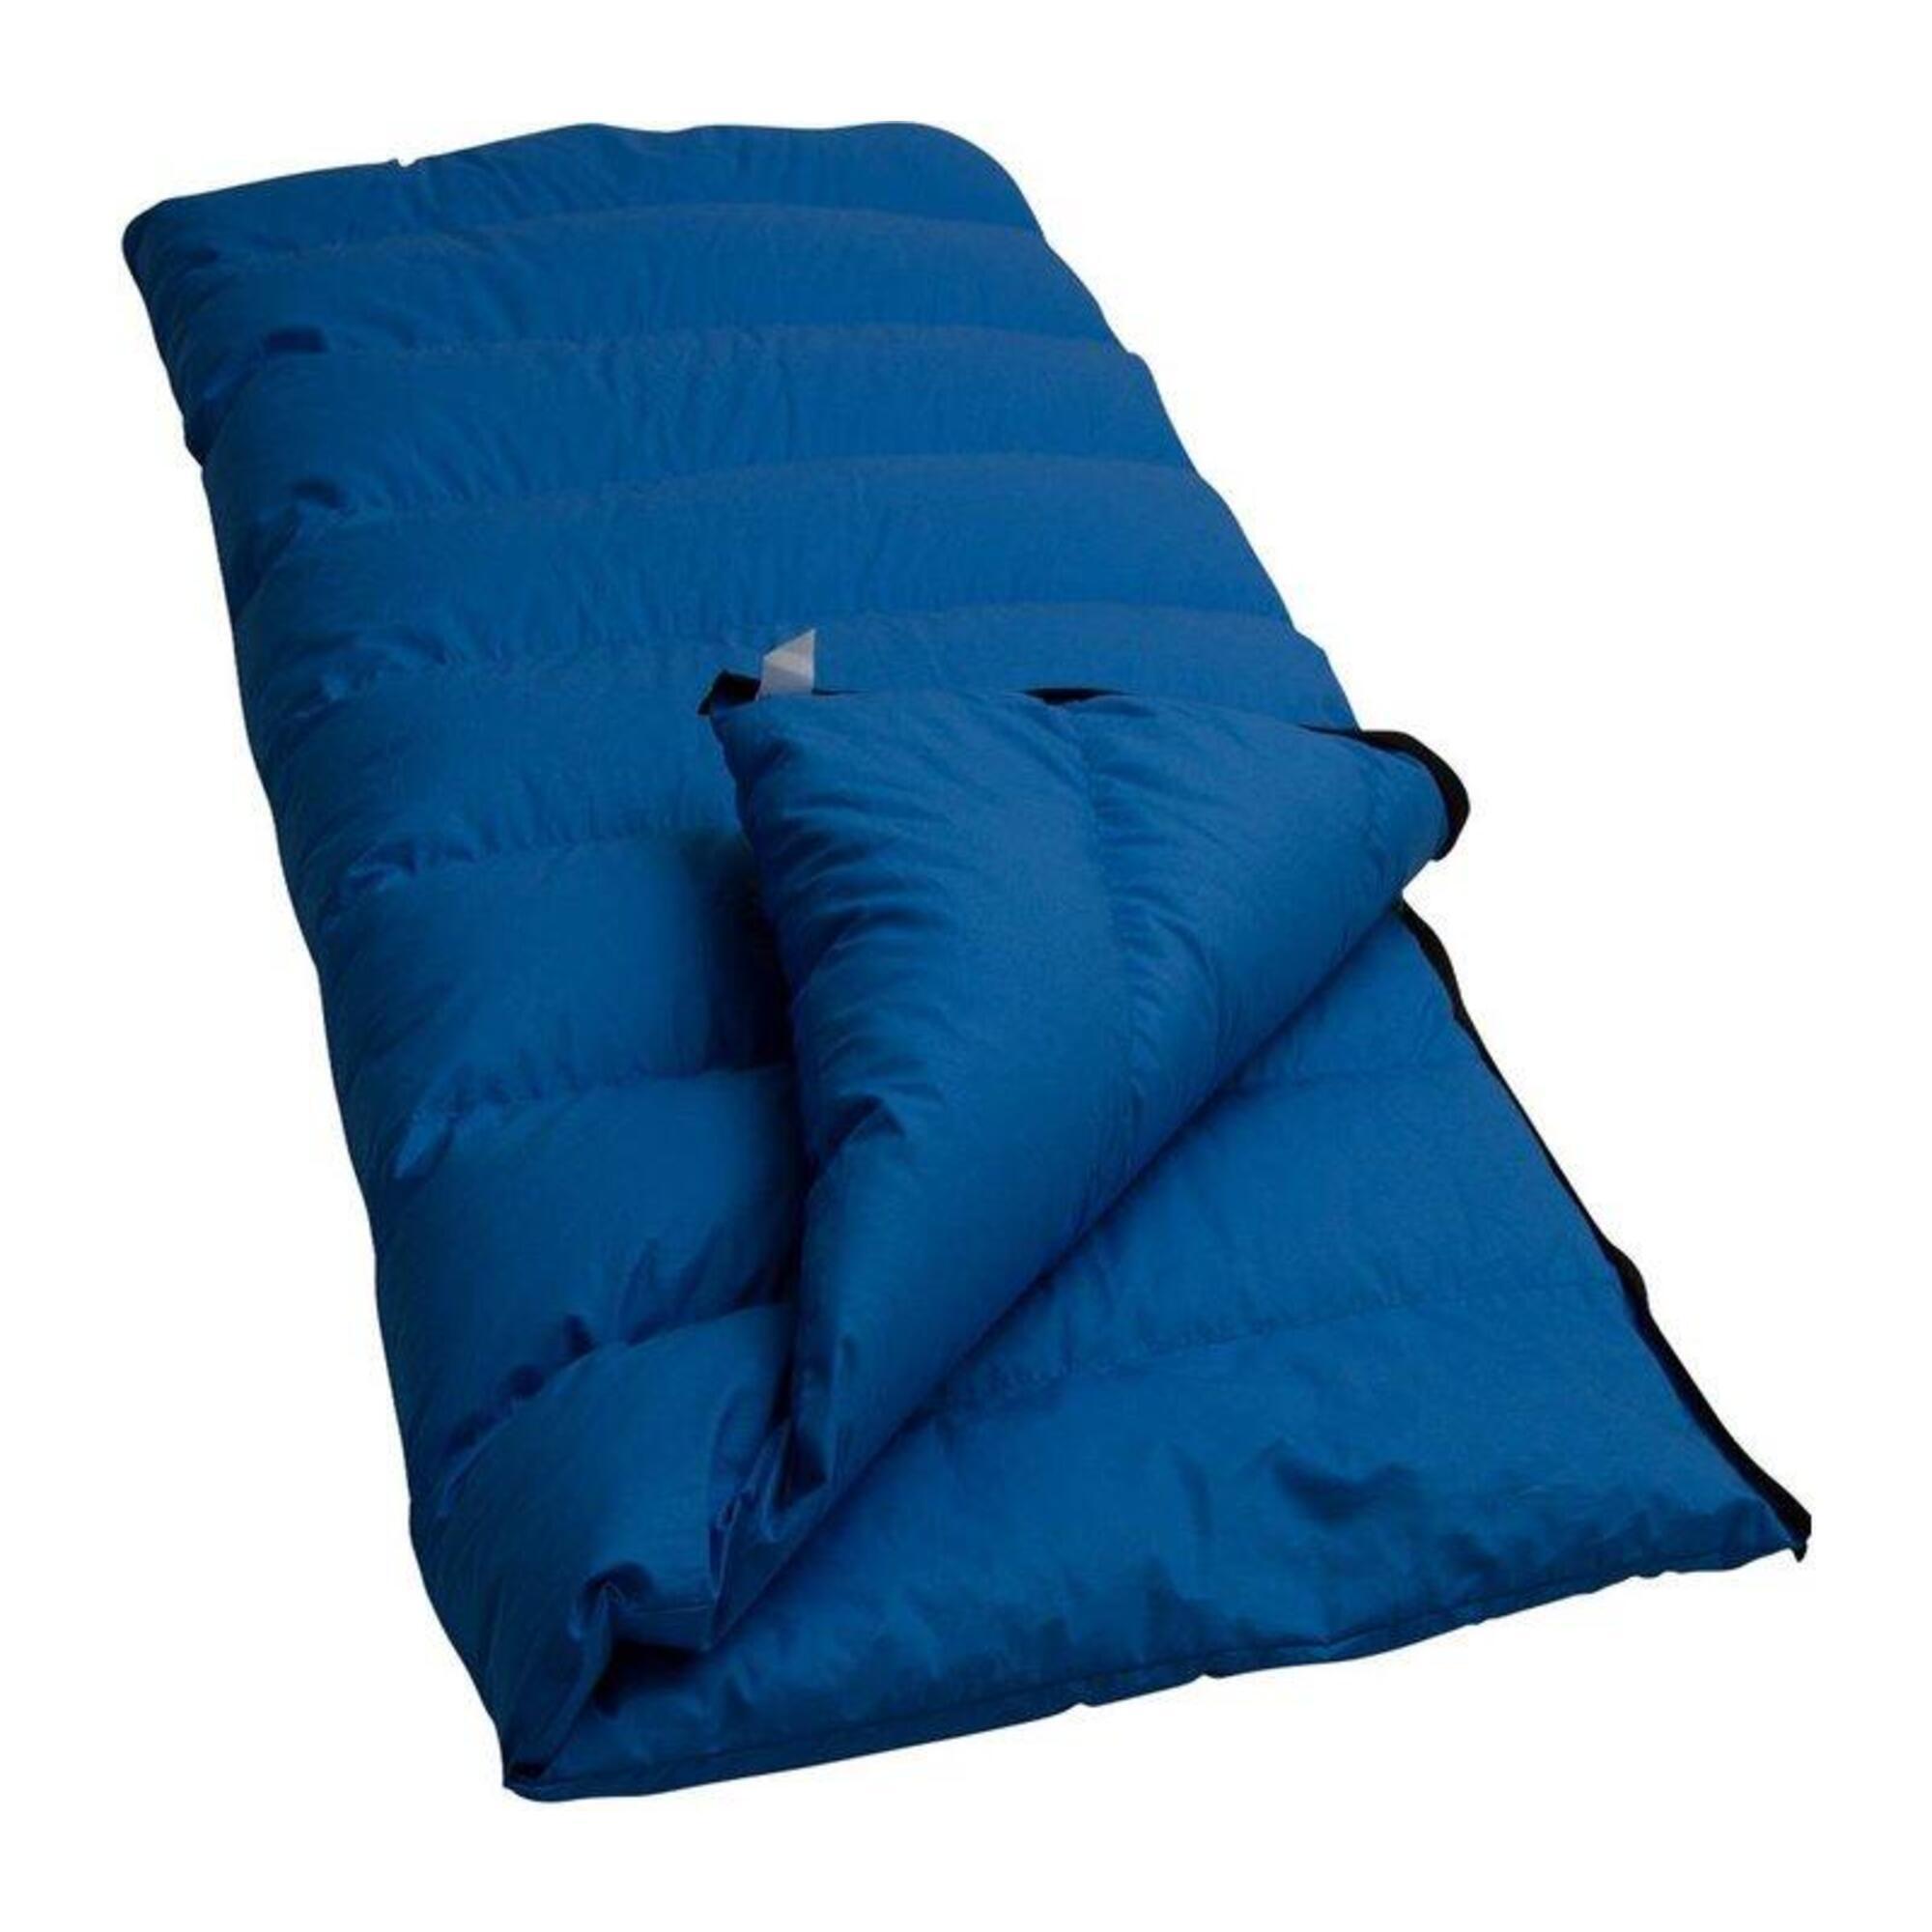 Спальный мешок Lowland Companion CC 1 с пуховым одеялом, синий цена и фото